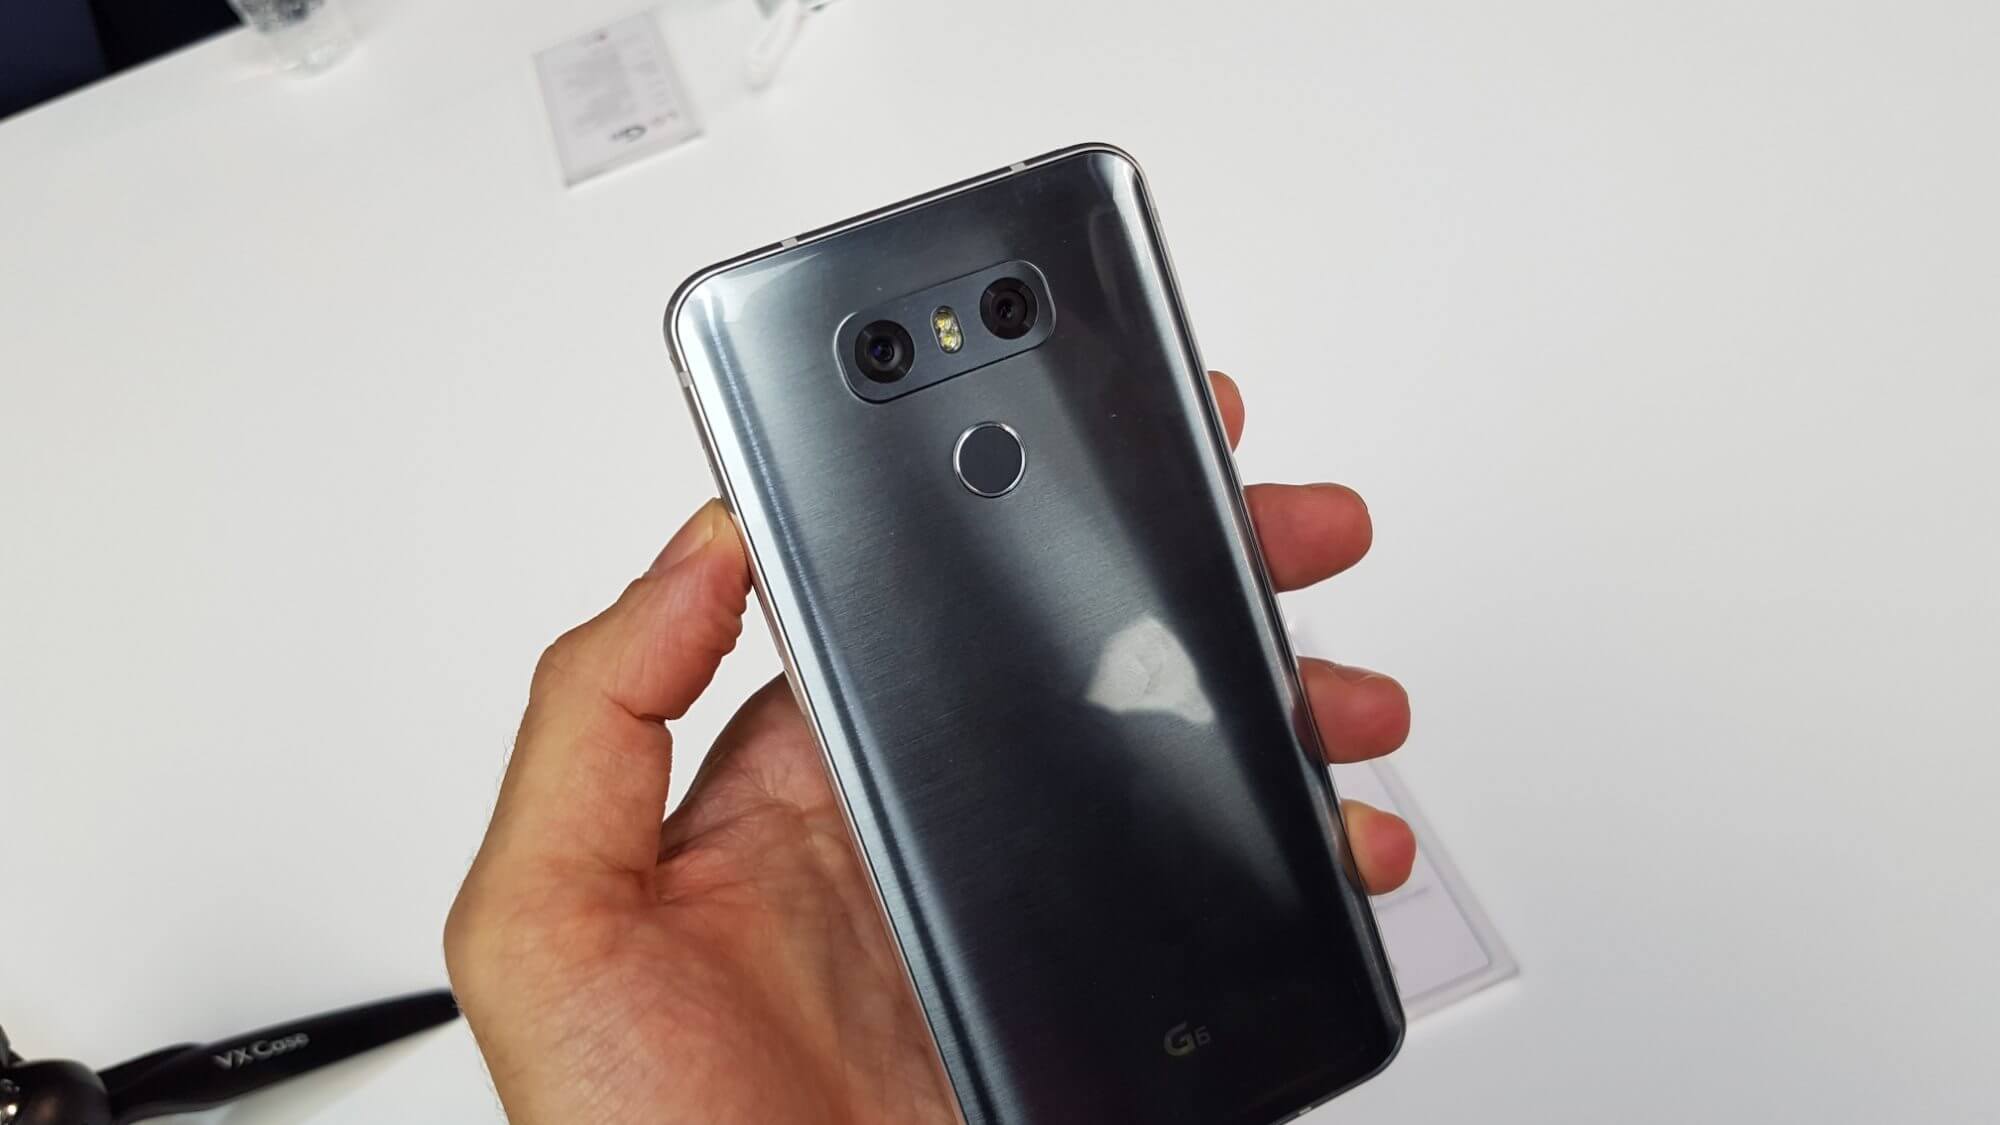 Lg g6 é lançado na mobile world congress. Novo smartphone topo de linha, o lg g6 foi lançado na mobile world congress 2017 com foco em tela “fullvision display” de 18:9, nova interface e câmeras potentes.